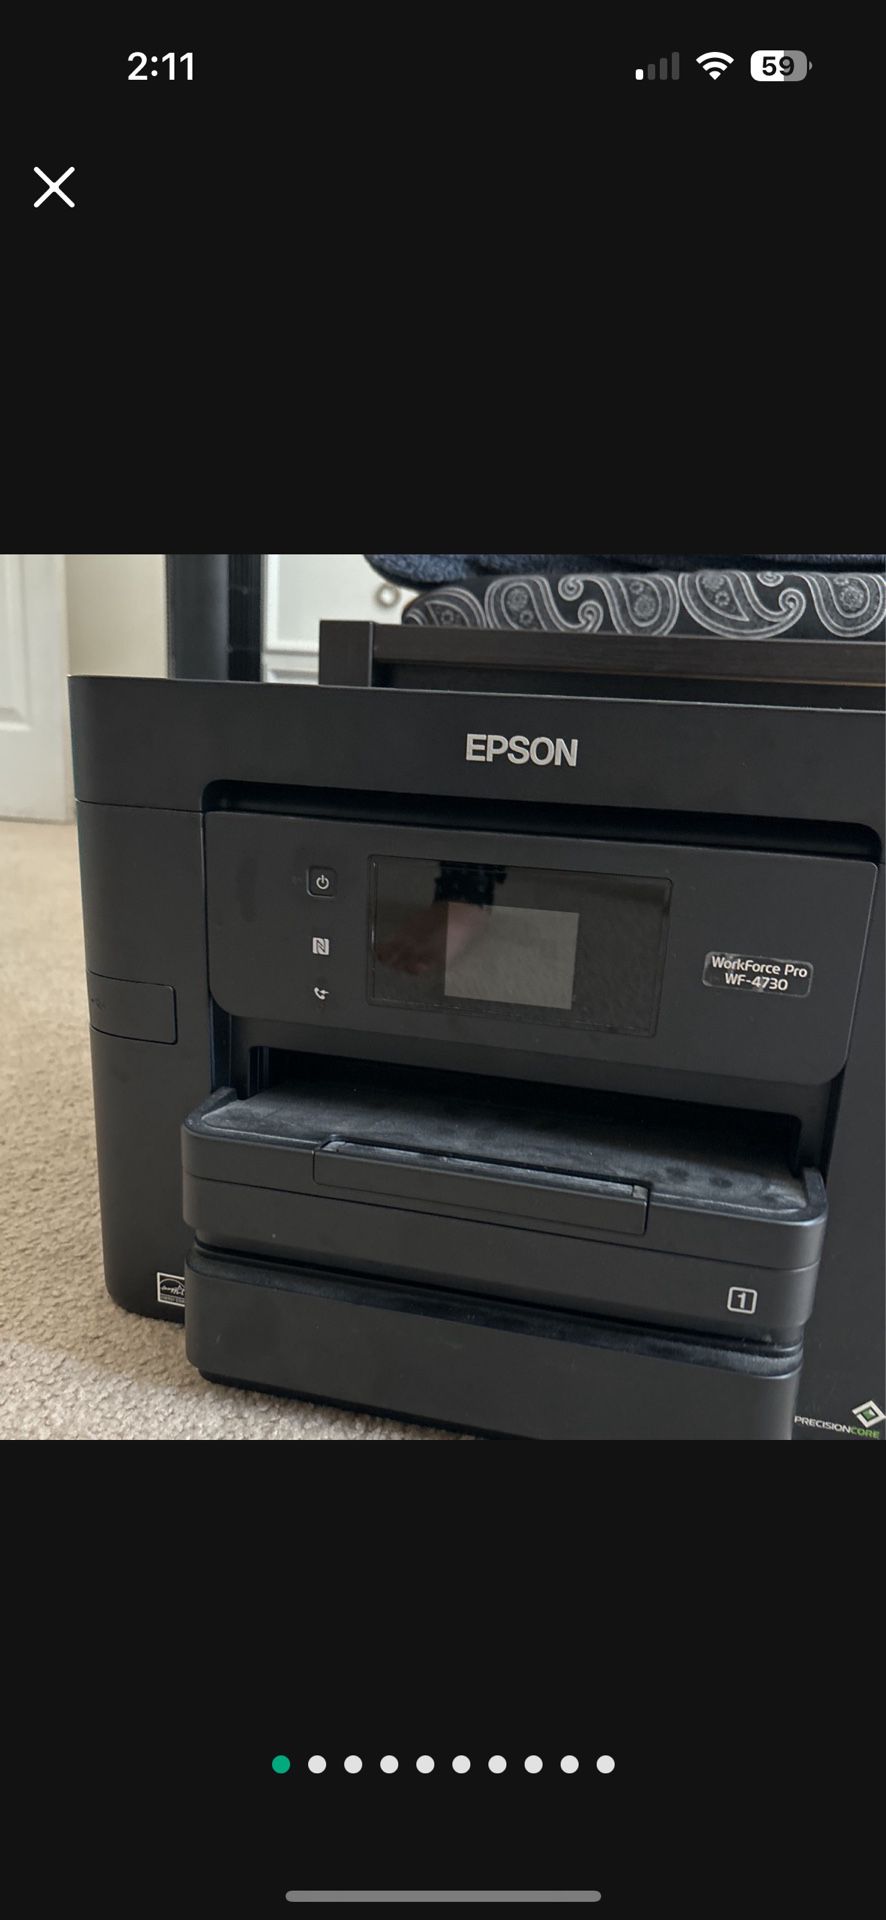 EPSON Printer Wf 4730